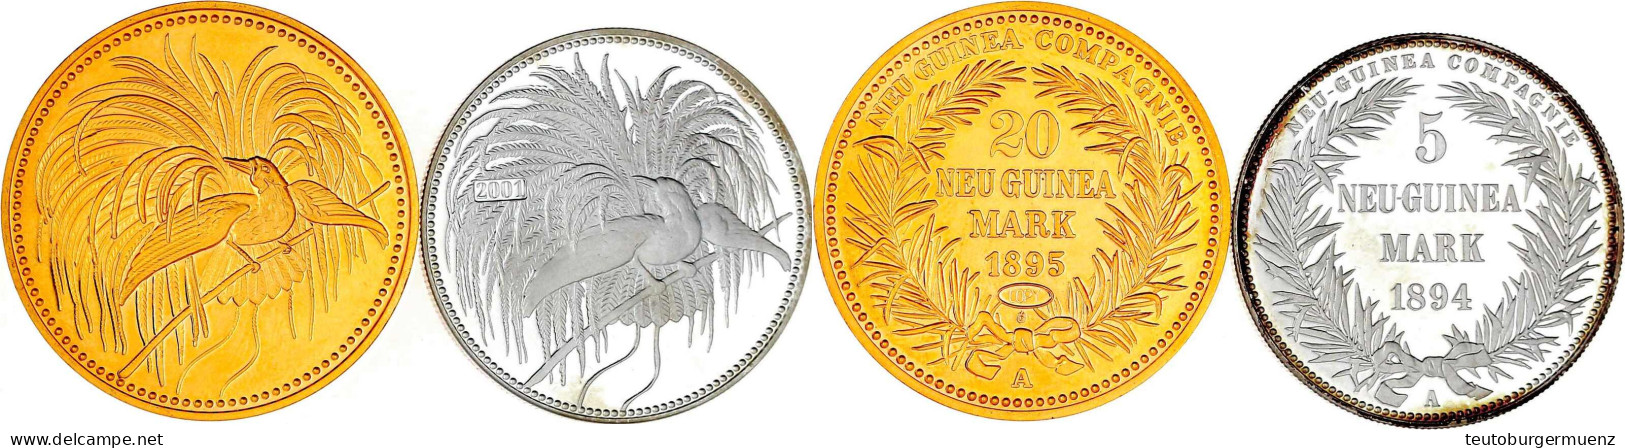 2 Neuprägungen: 5 Mark 1895/2001 Feinsilber In Originalgröße Und 20 Mark 1895 (Copy) In 5 Mark-Größe (CuNi Vergoldet). B - German New Guinea